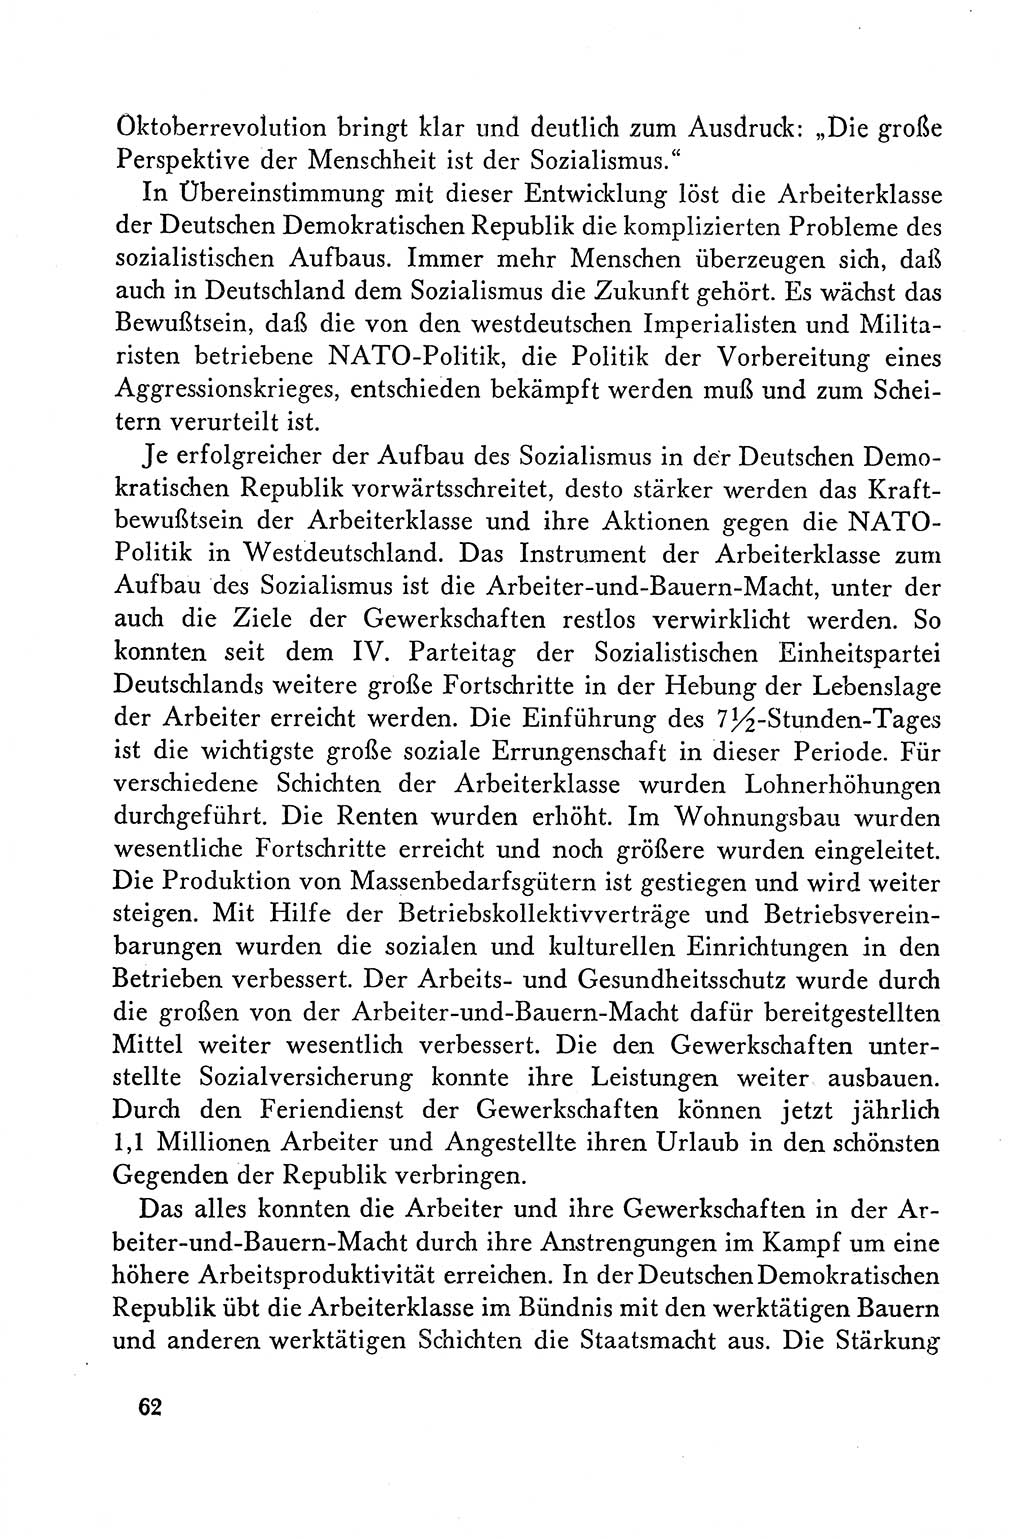 Dokumente der Sozialistischen Einheitspartei Deutschlands (SED) [Deutsche Demokratische Republik (DDR)] 1958-1959, Seite 62 (Dok. SED DDR 1958-1959, S. 62)